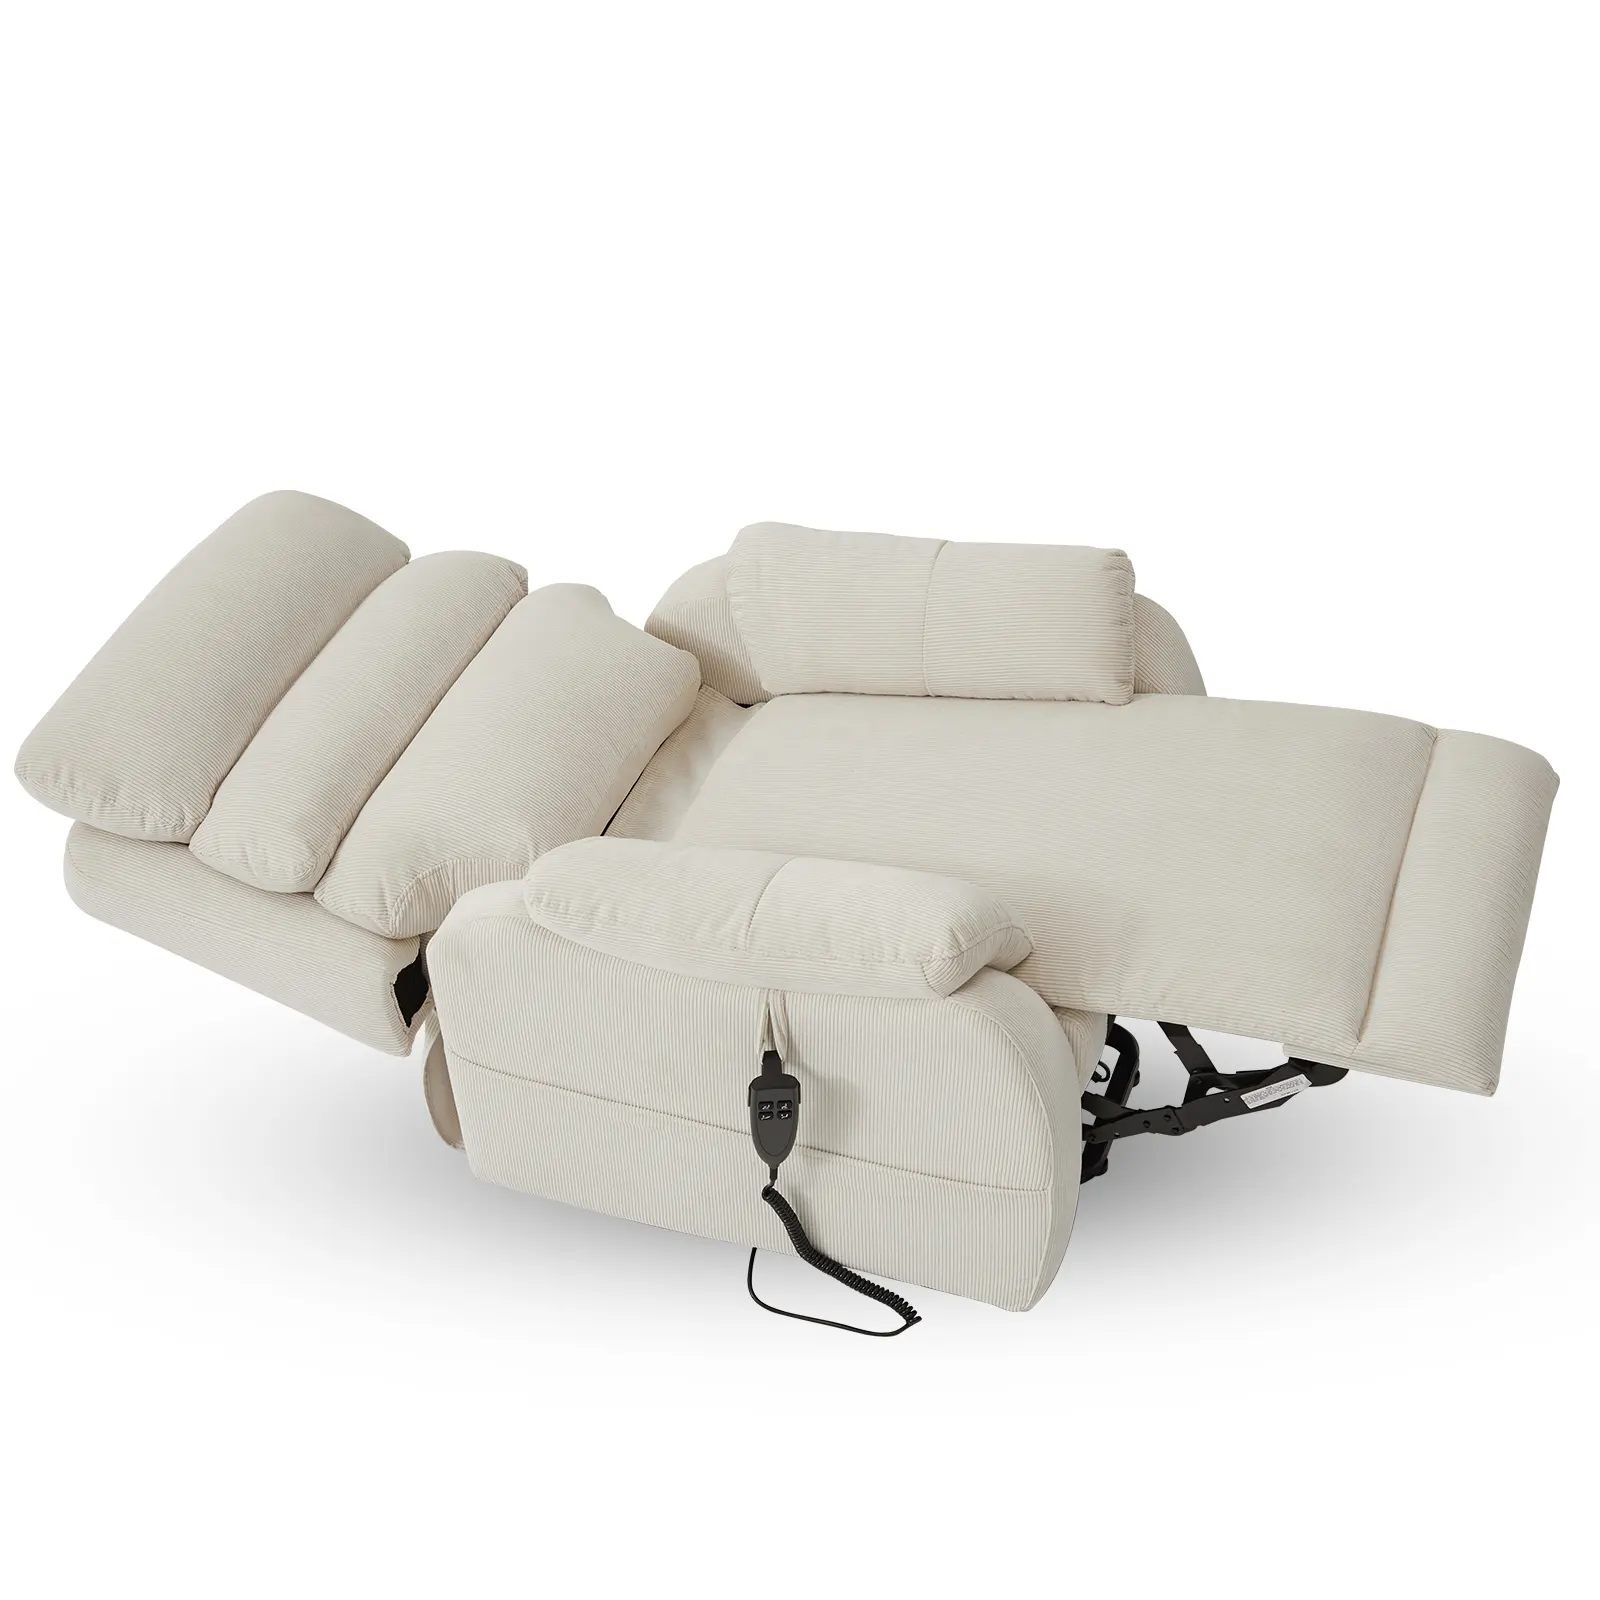 Silla reclinable CJSmart Home Lift para personas cortas, sofá de elevación eléctrica plana con ajuste de posición infinita y bolsillo lateral